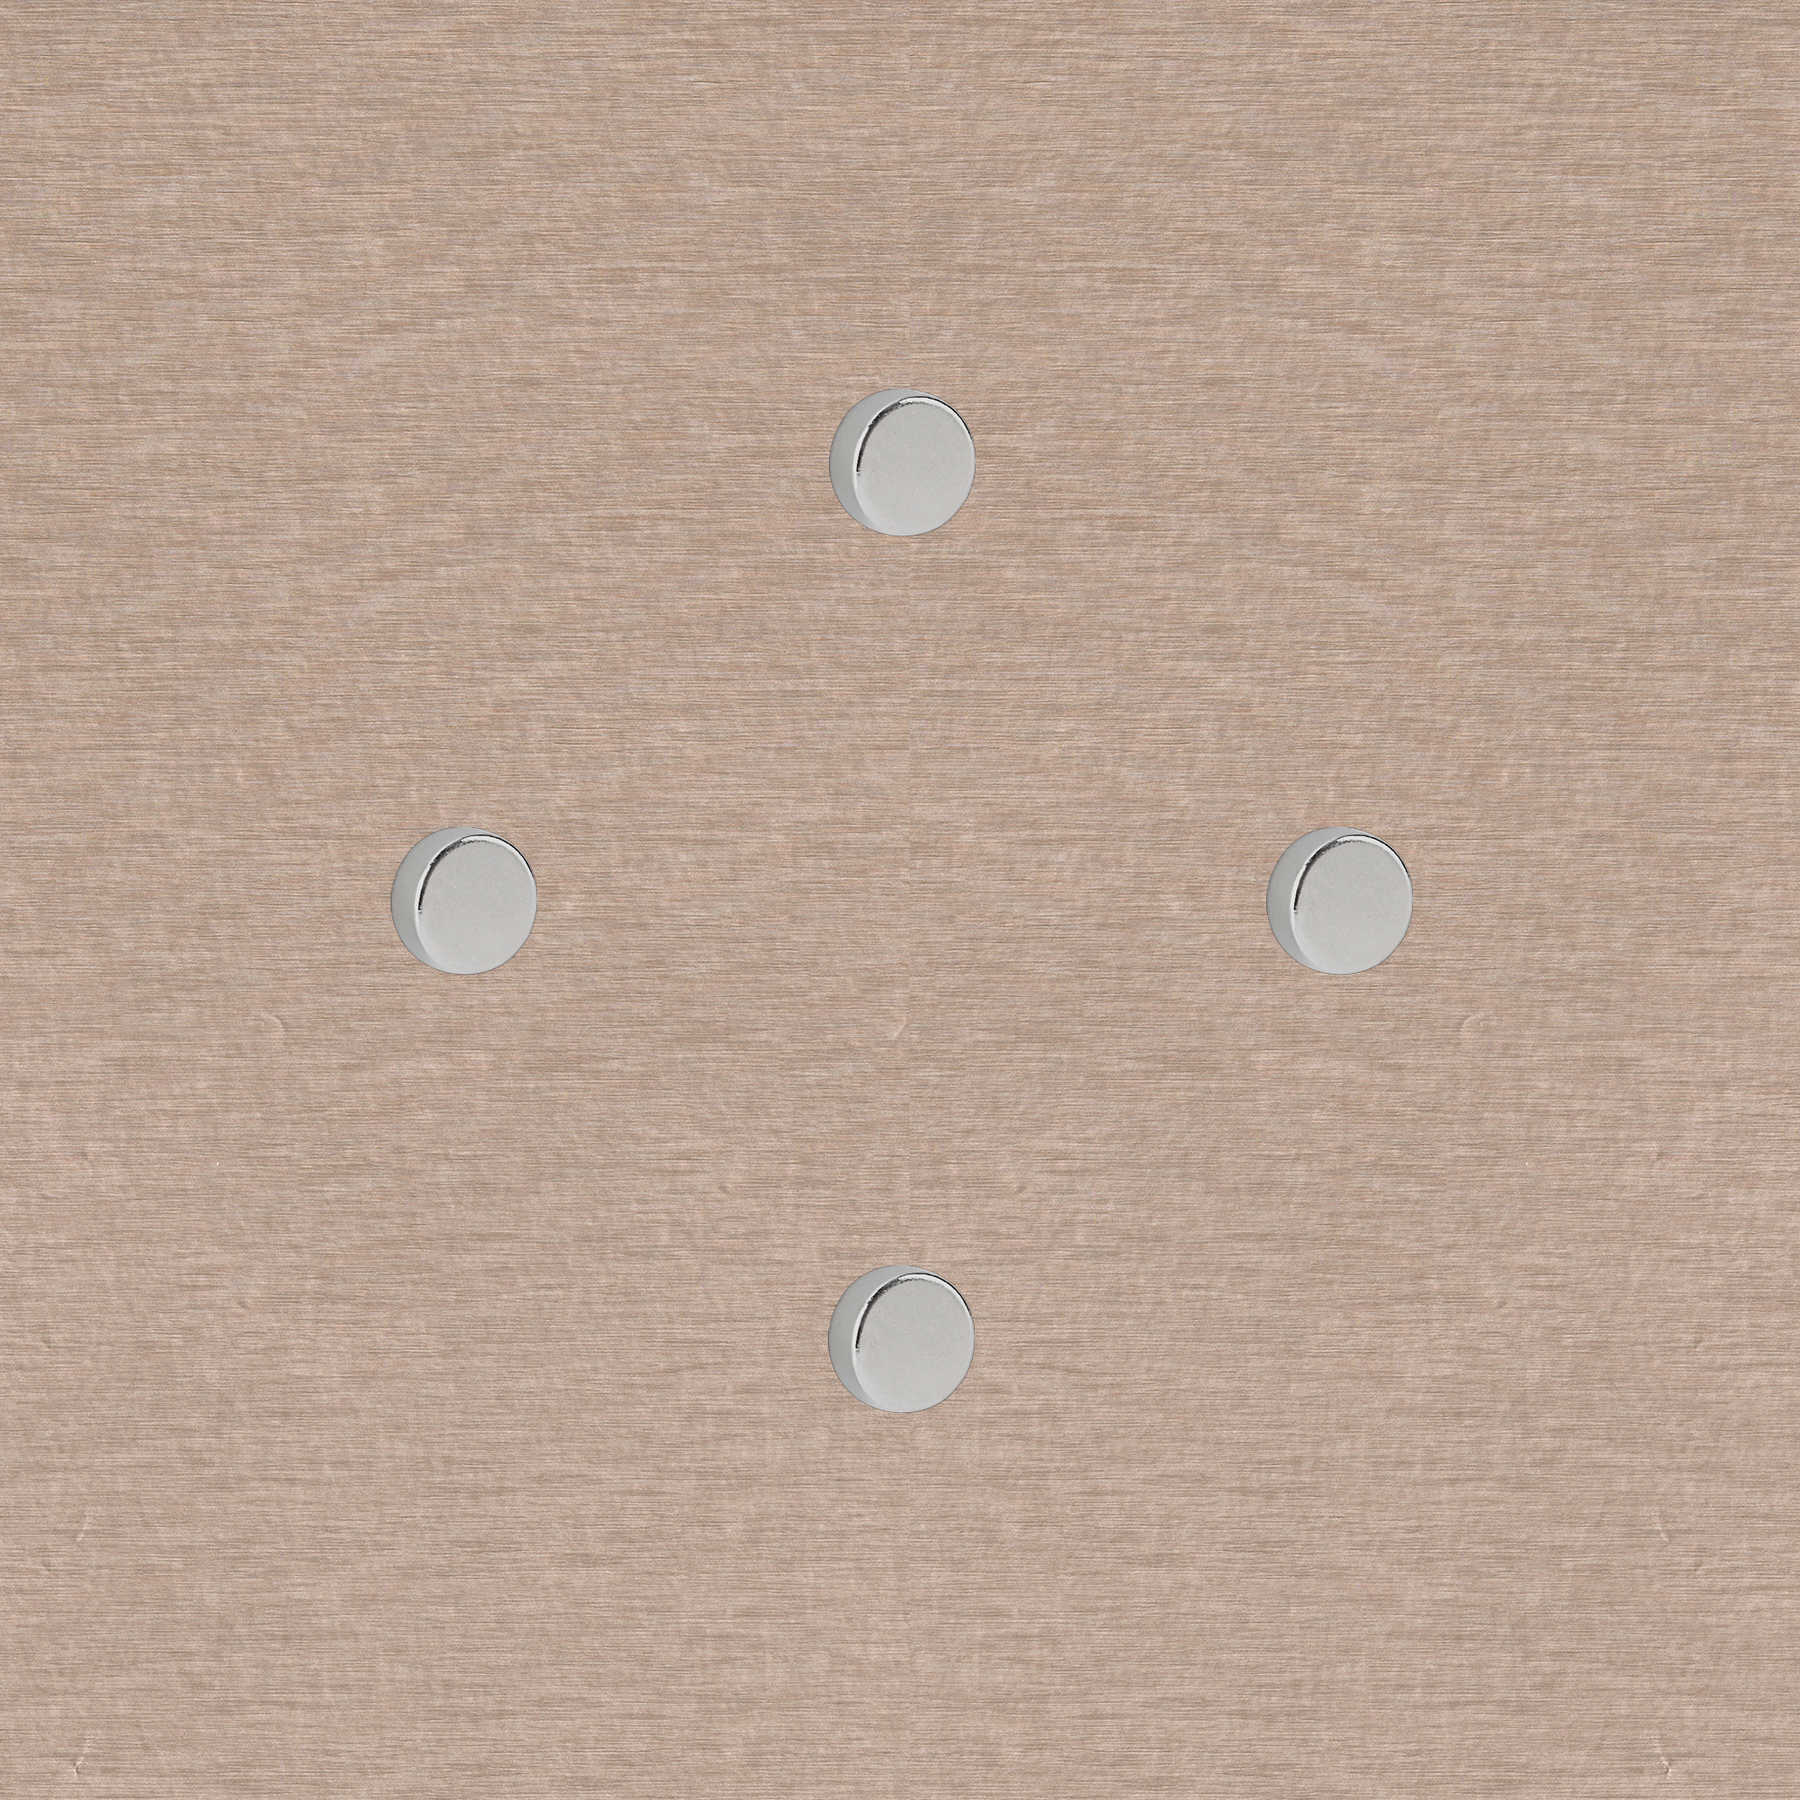             4er-Set runde Starkmagneten in 15 x 4 mm
        